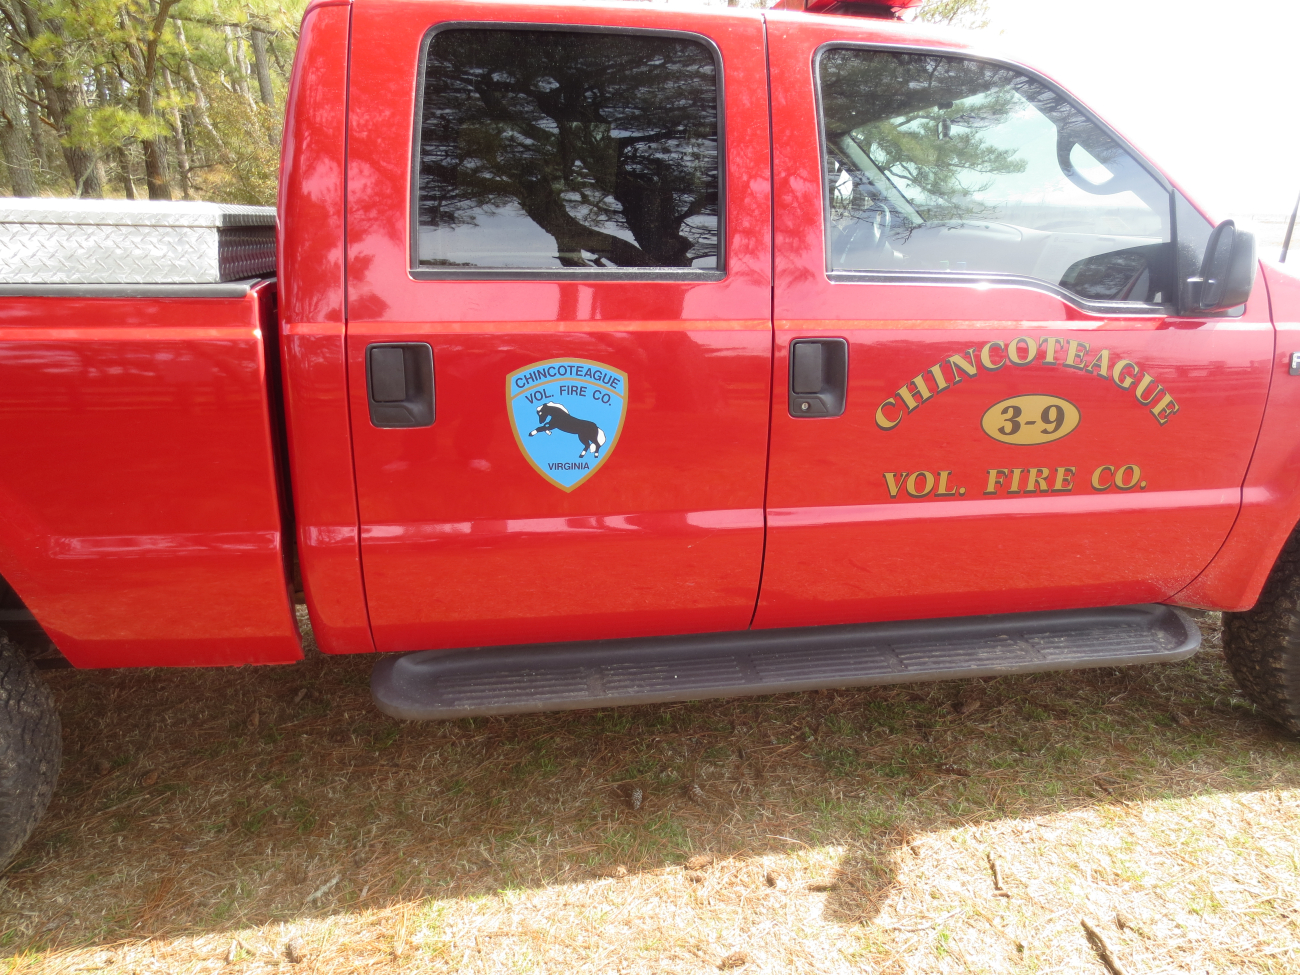 Chincoteague volunteer fire department truck